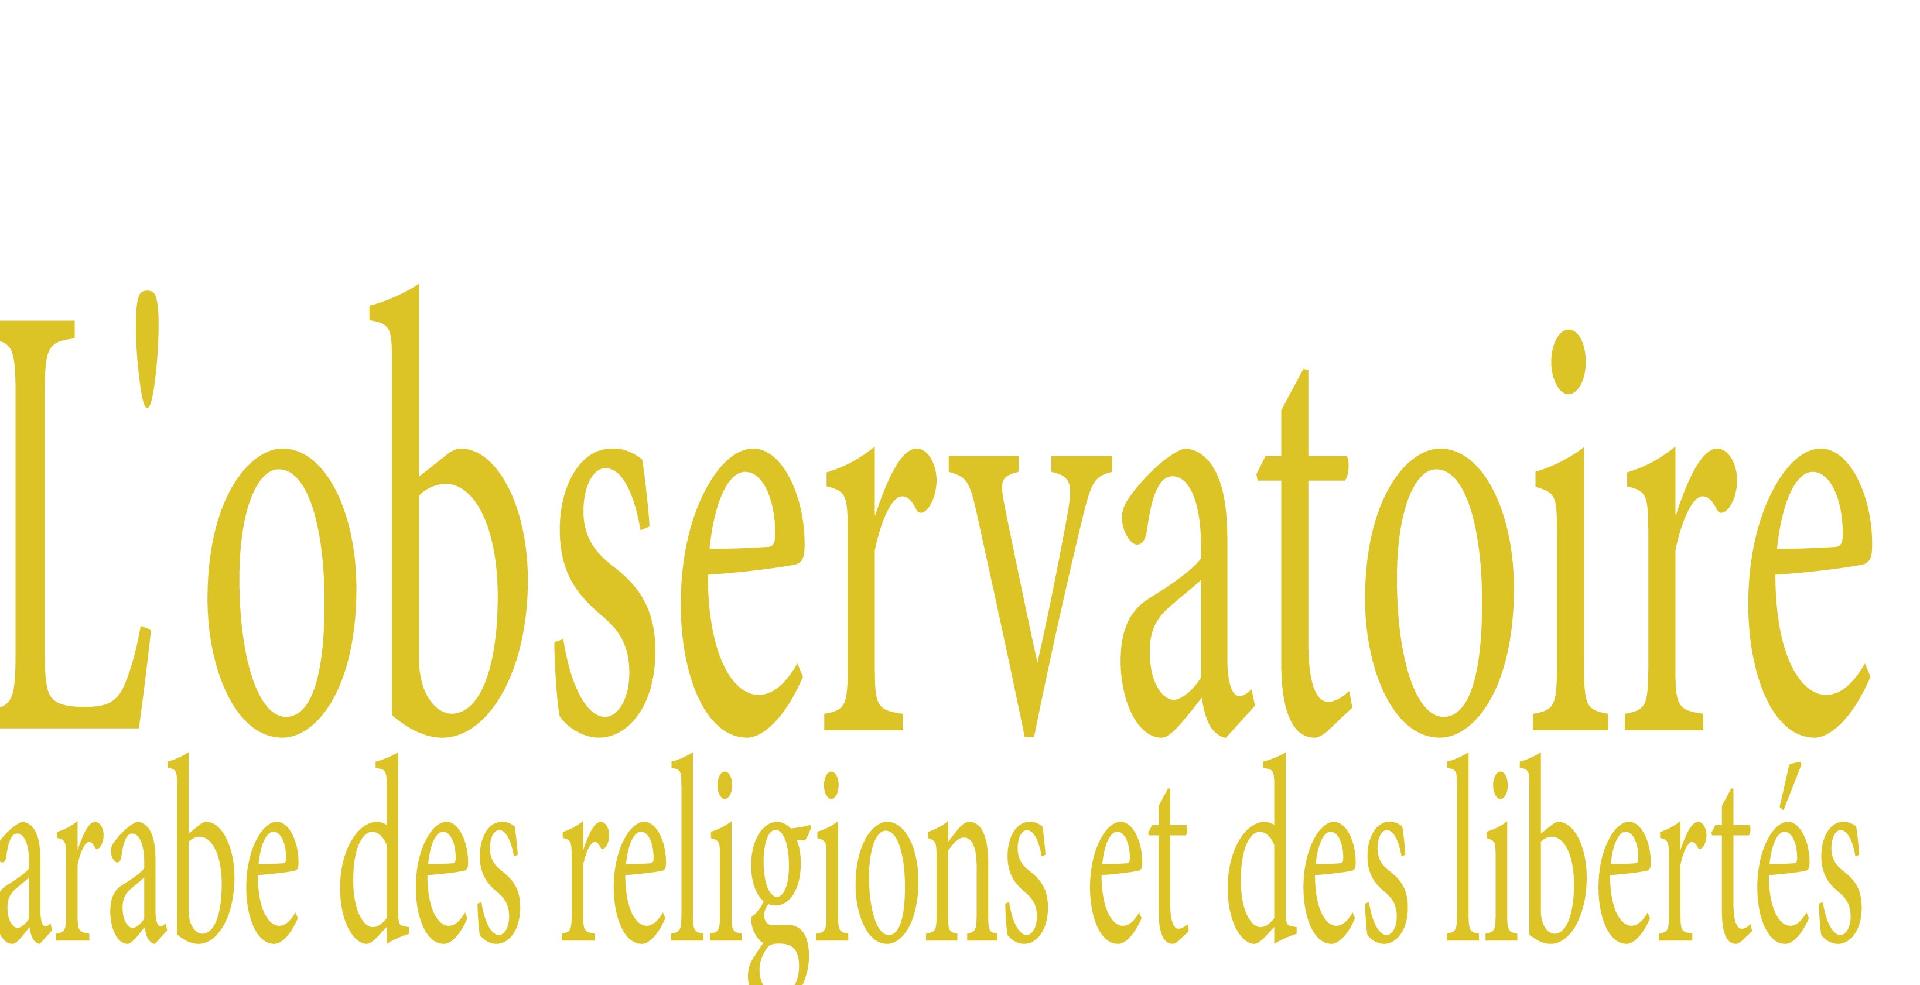 Observatoire arabe des religions et des libertés (OARL)